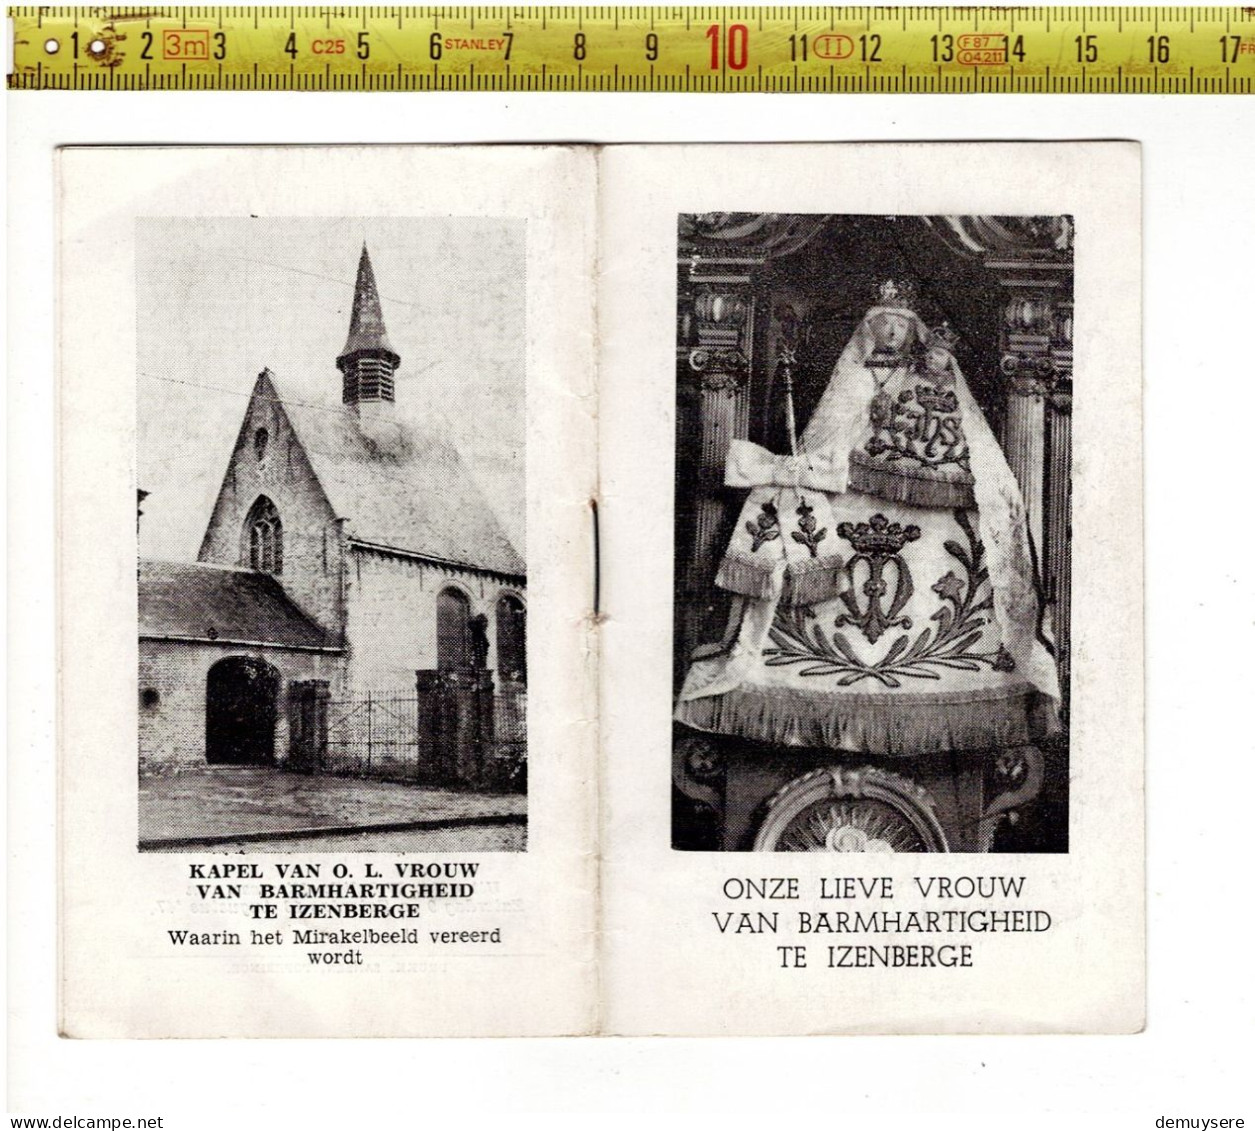 KL 5310 - BOEKJE - ONZE LIEVE VROUW VAN BARMHARTIGHEID TE IZENBERGE - 1947 - 14 BLZ - Devotion Images